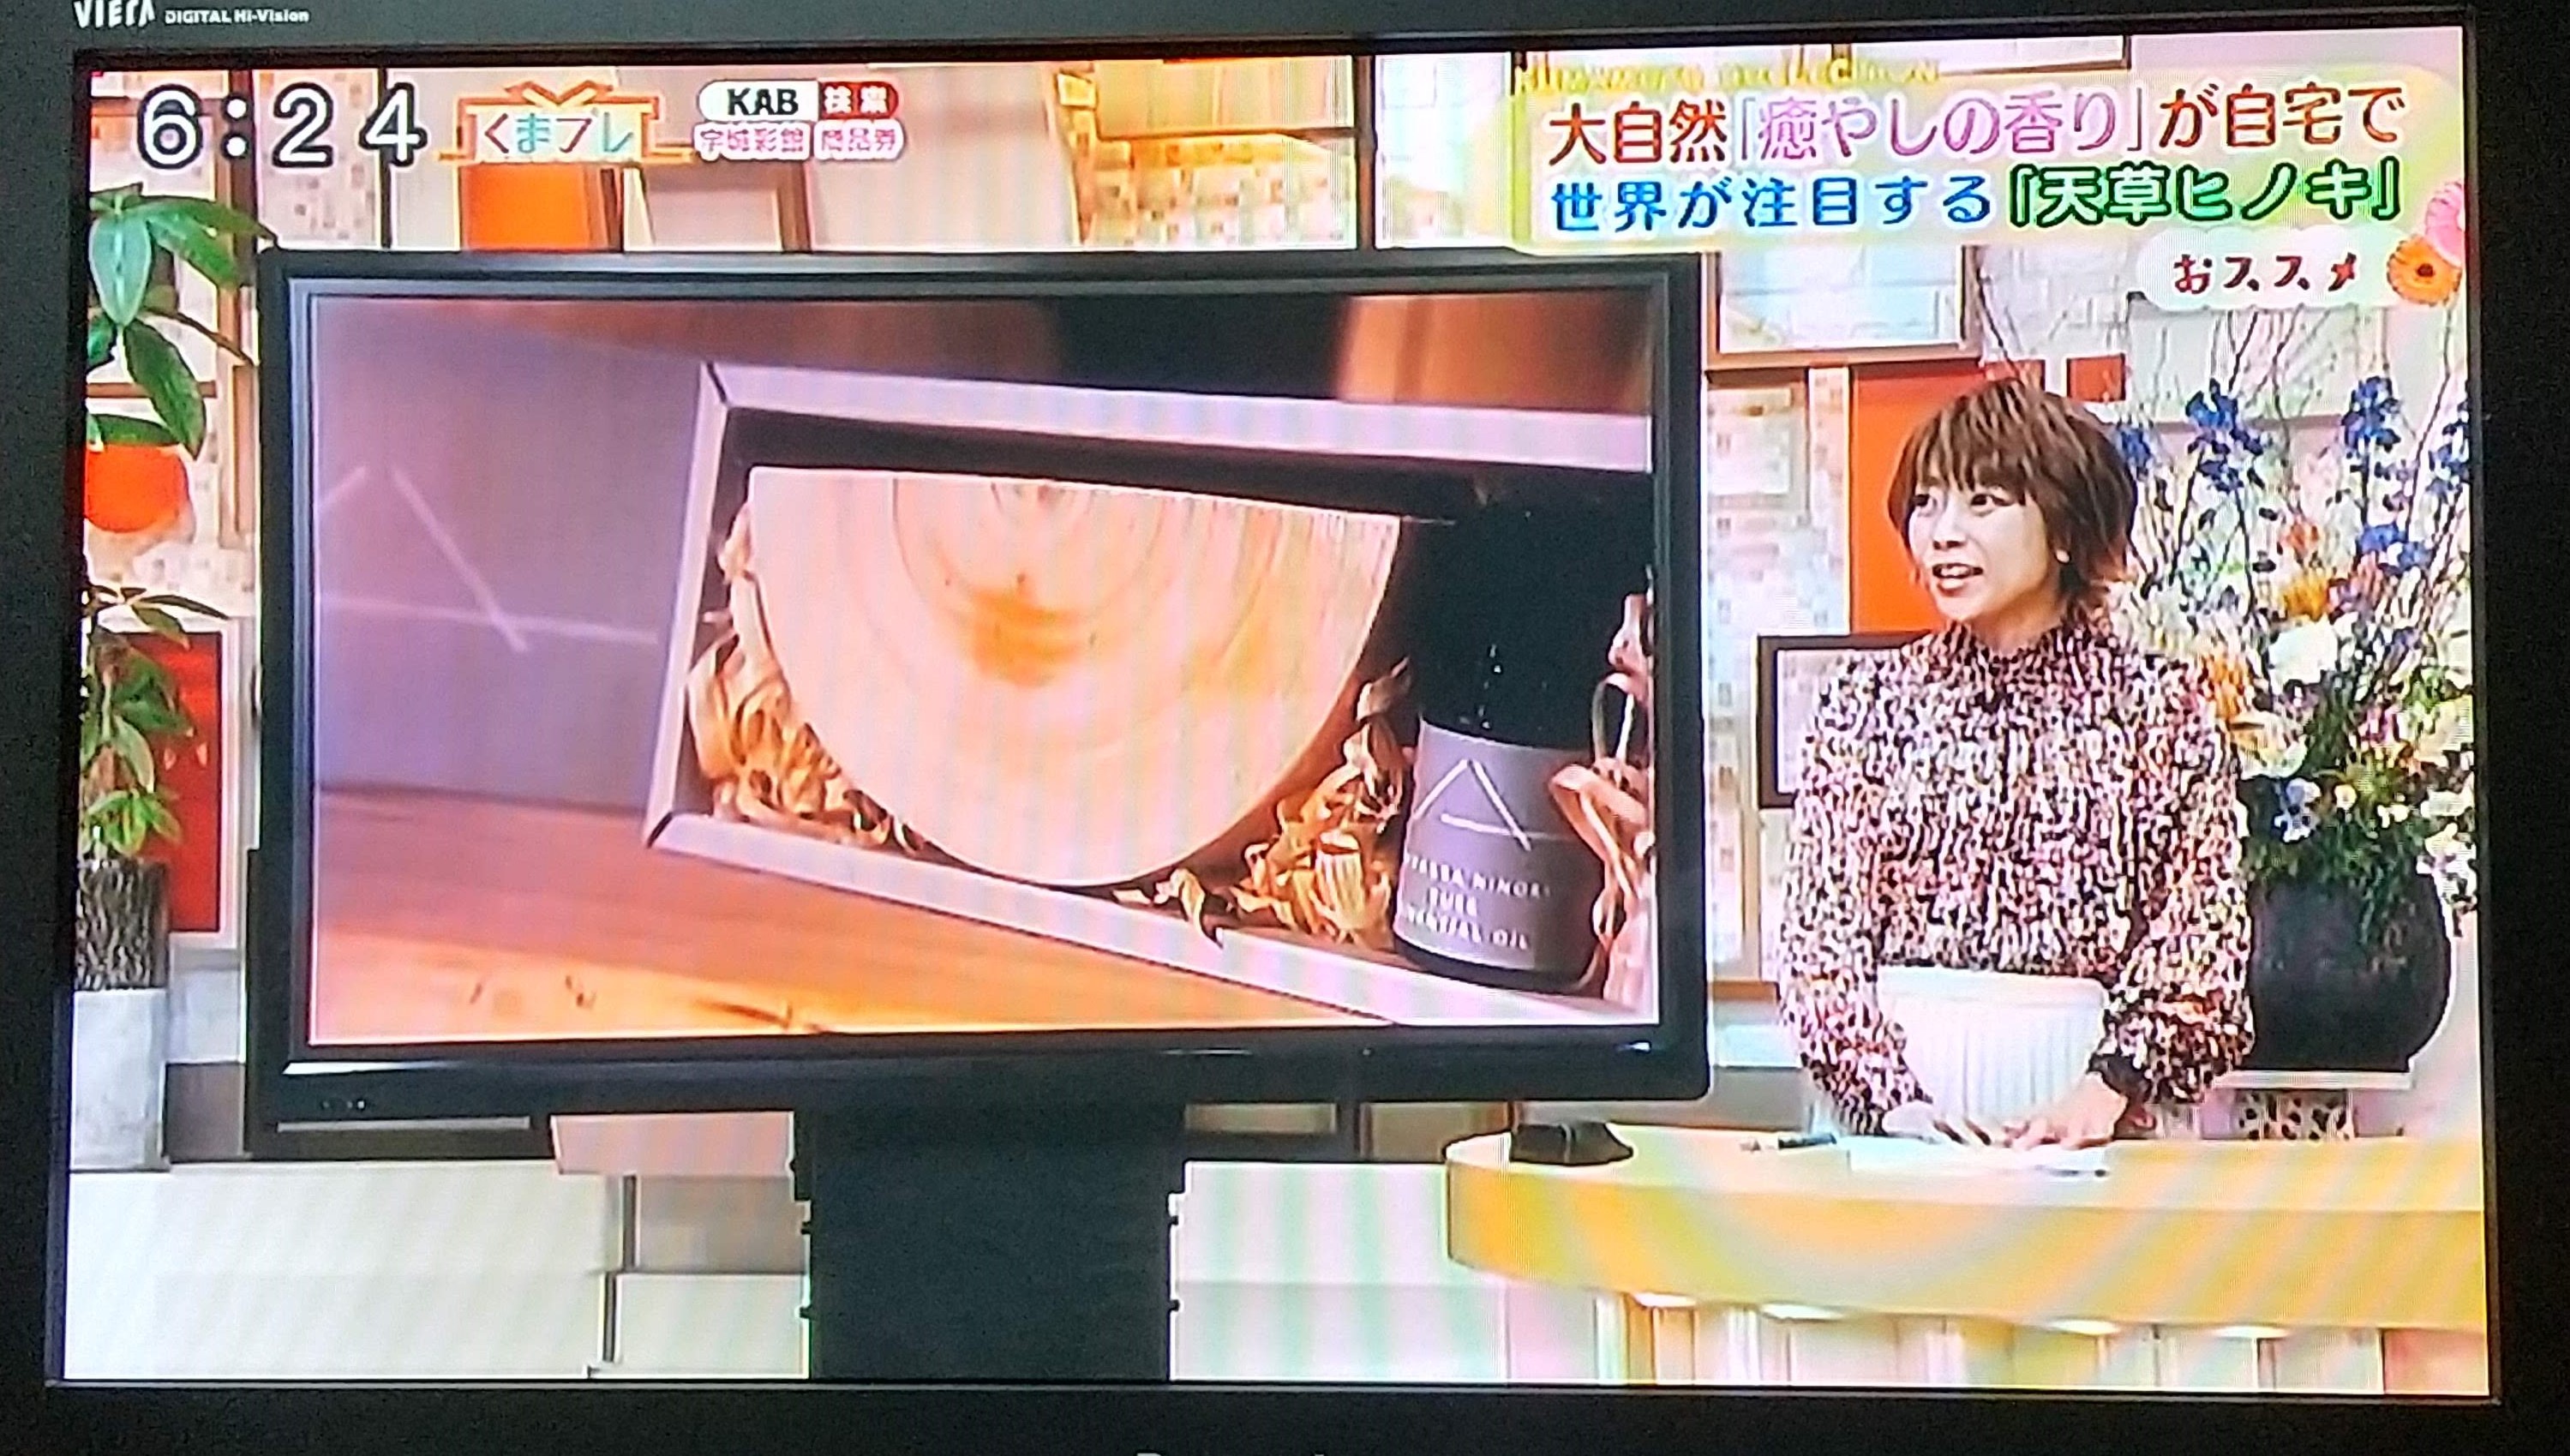 アミュプラザ熊本のオープン記念品にして頂くことを、KAB朝日放送さんに取材に来て頂きました。